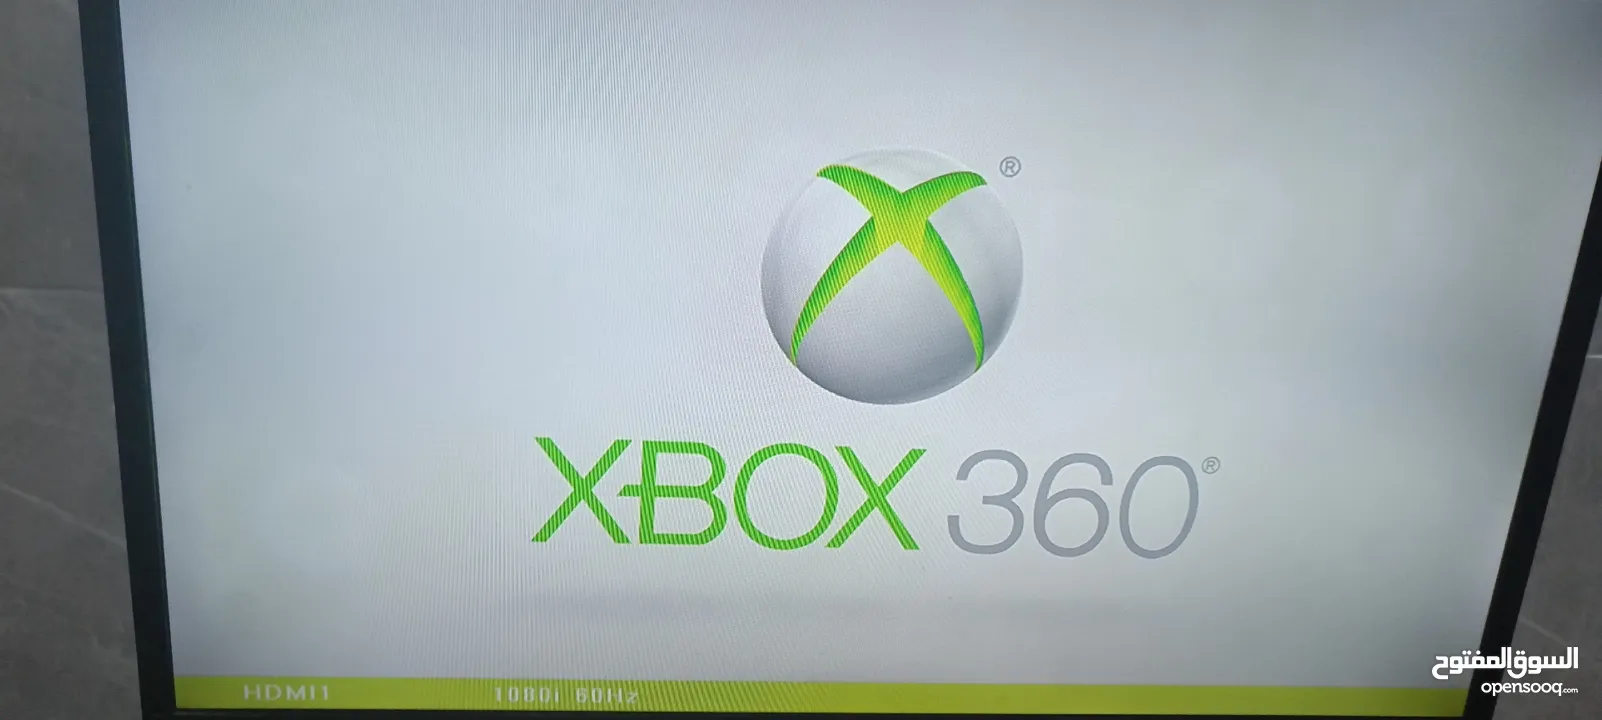 جهاز ألعاب Xbox 360 اكس بوكس